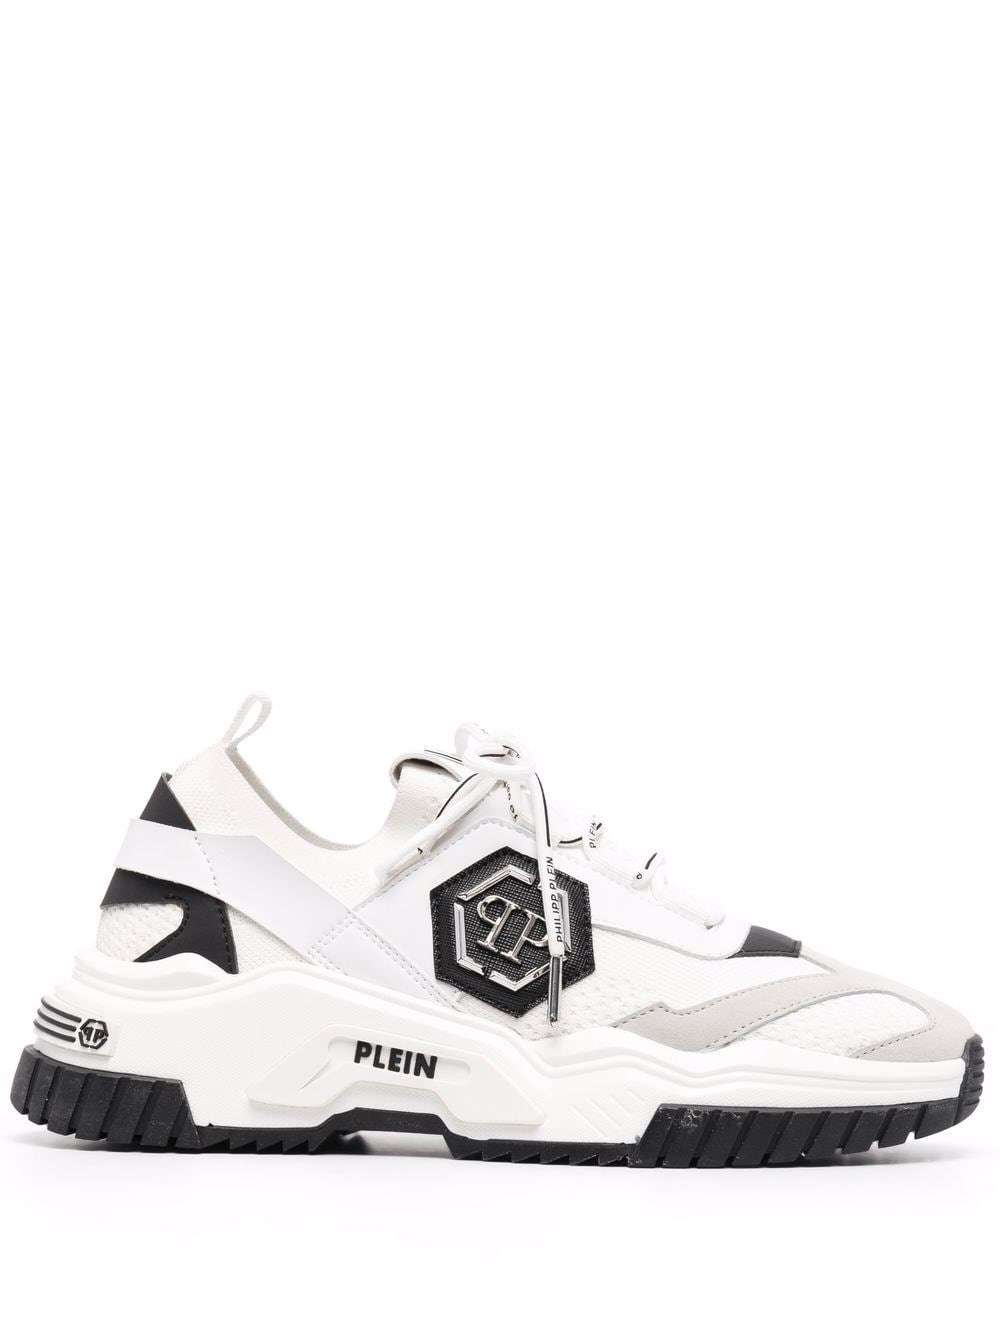 Philipp Plein Trainer Predator Sneakers In White